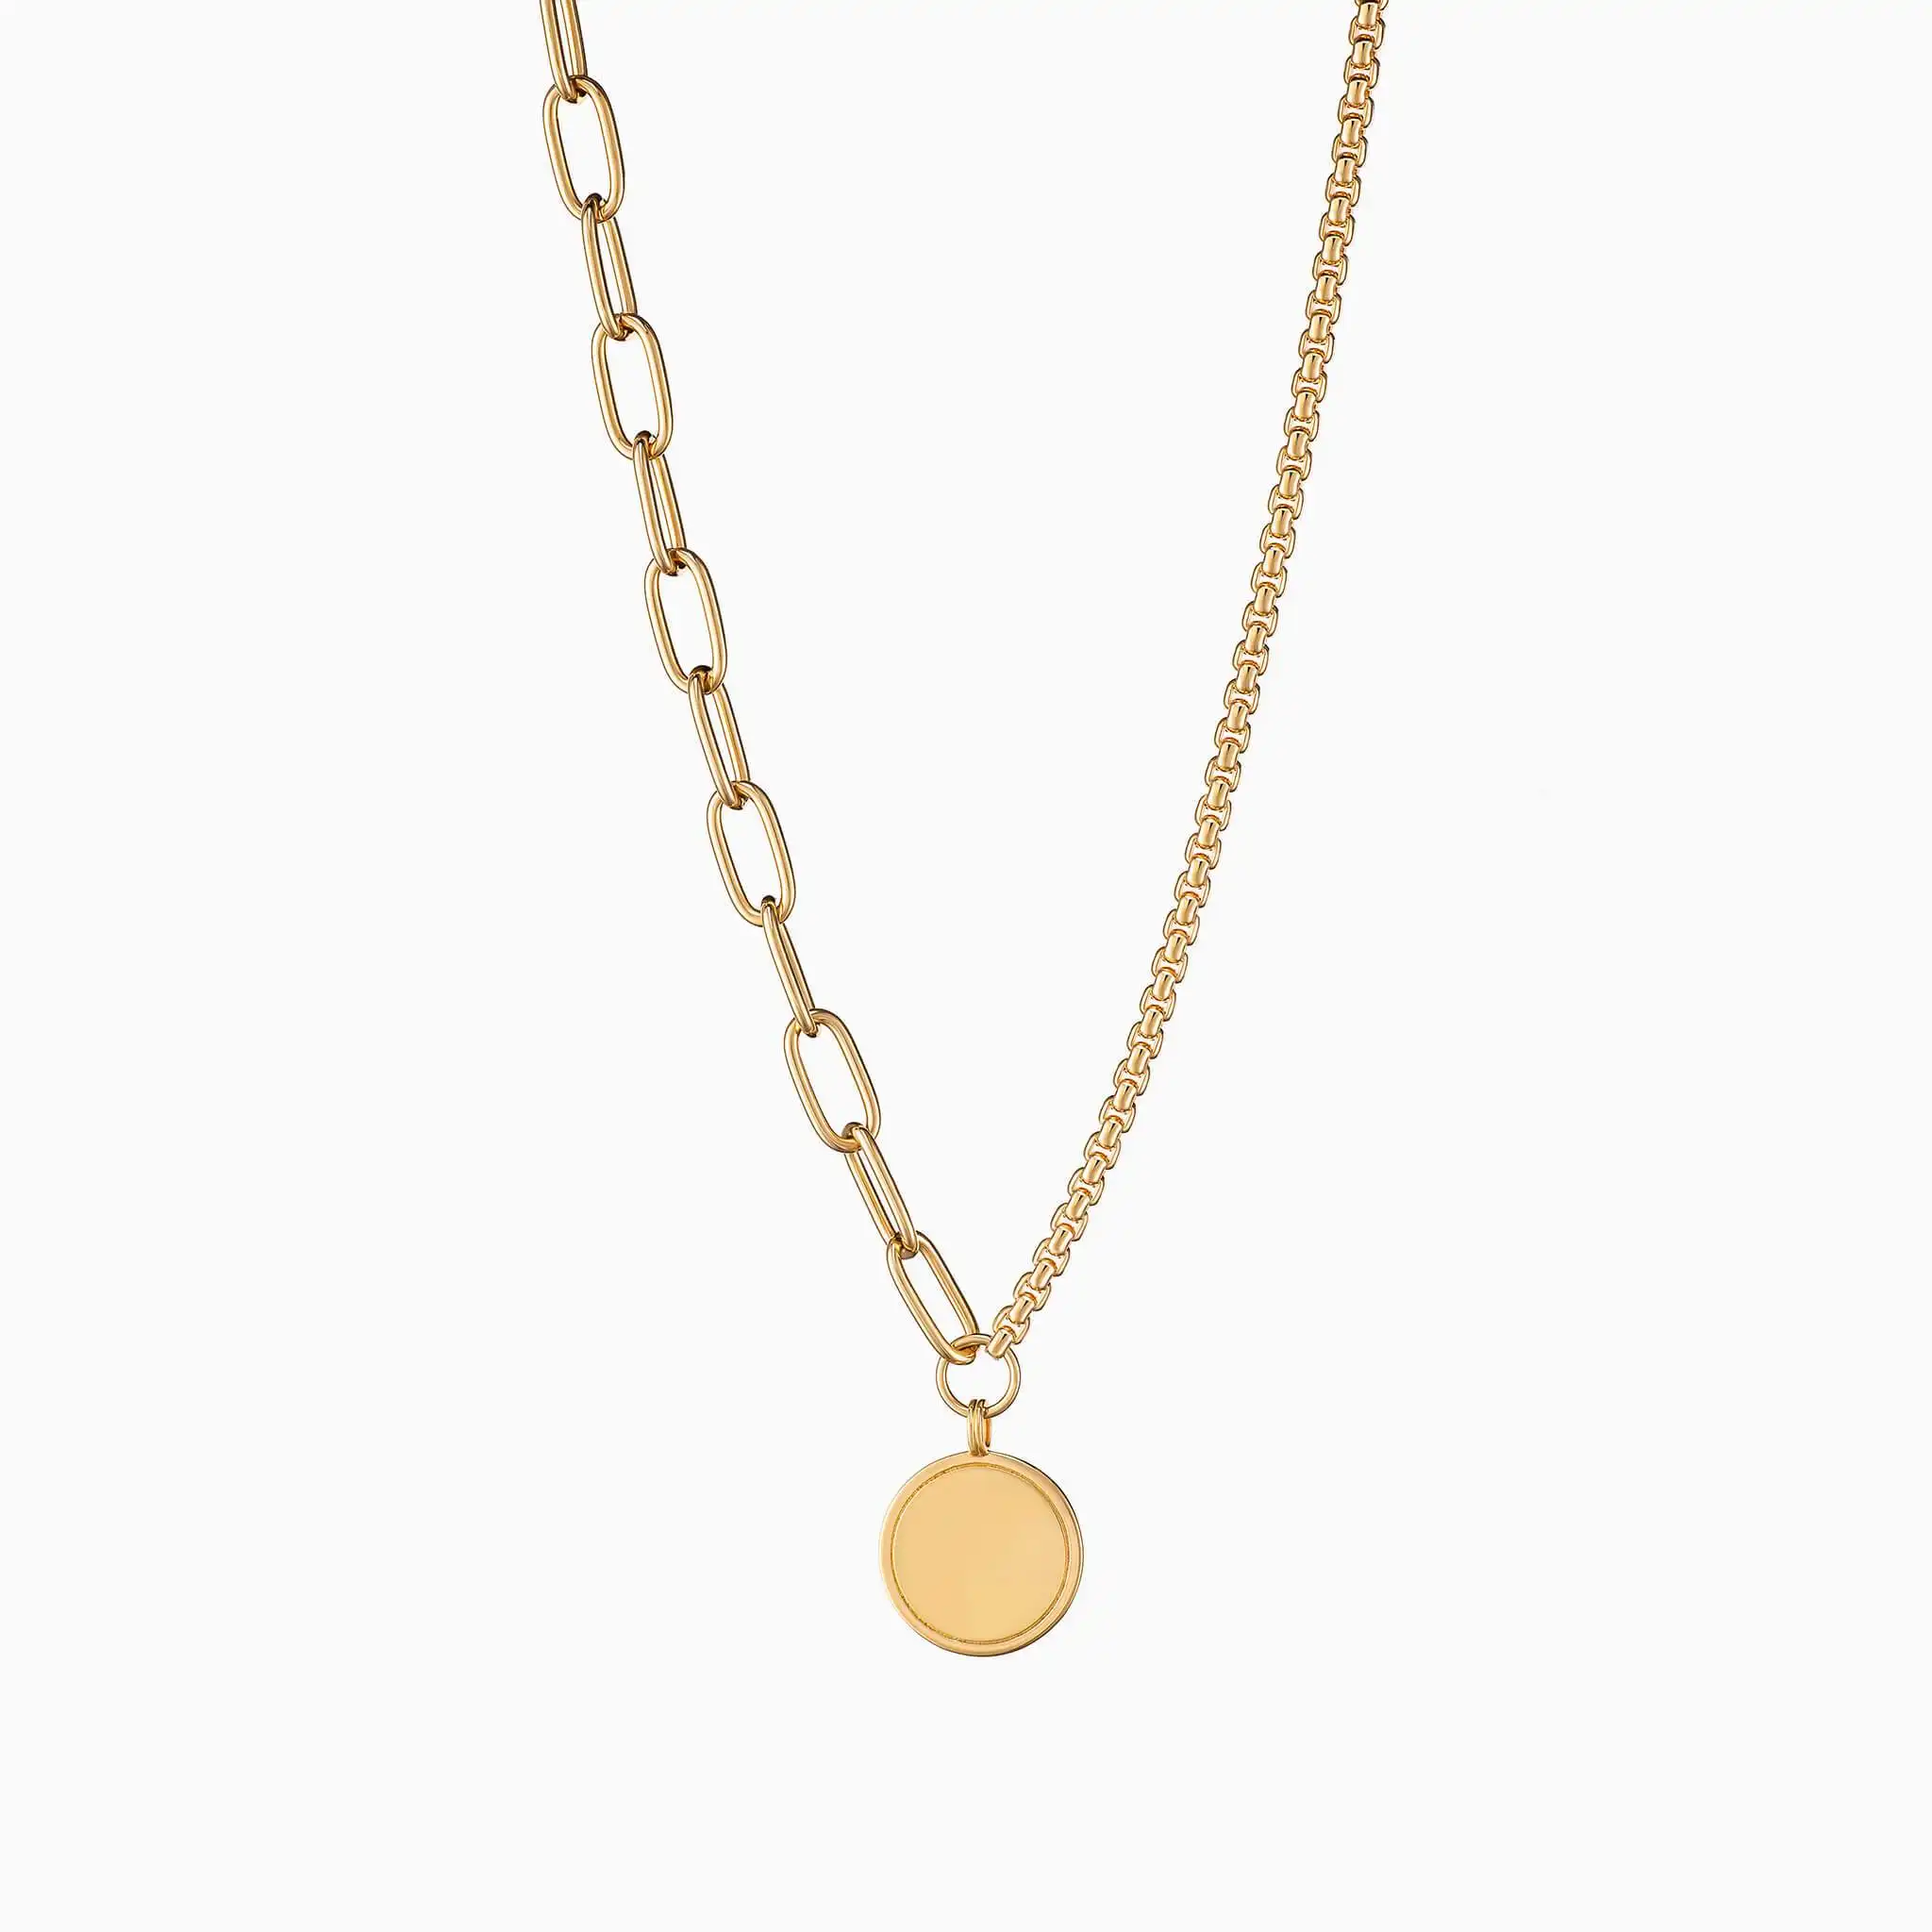 Höchste Qualität 316L Edelstahl Modeschmuck Mixed Chain Joy Gold Halskette für Frauen jeden Tag